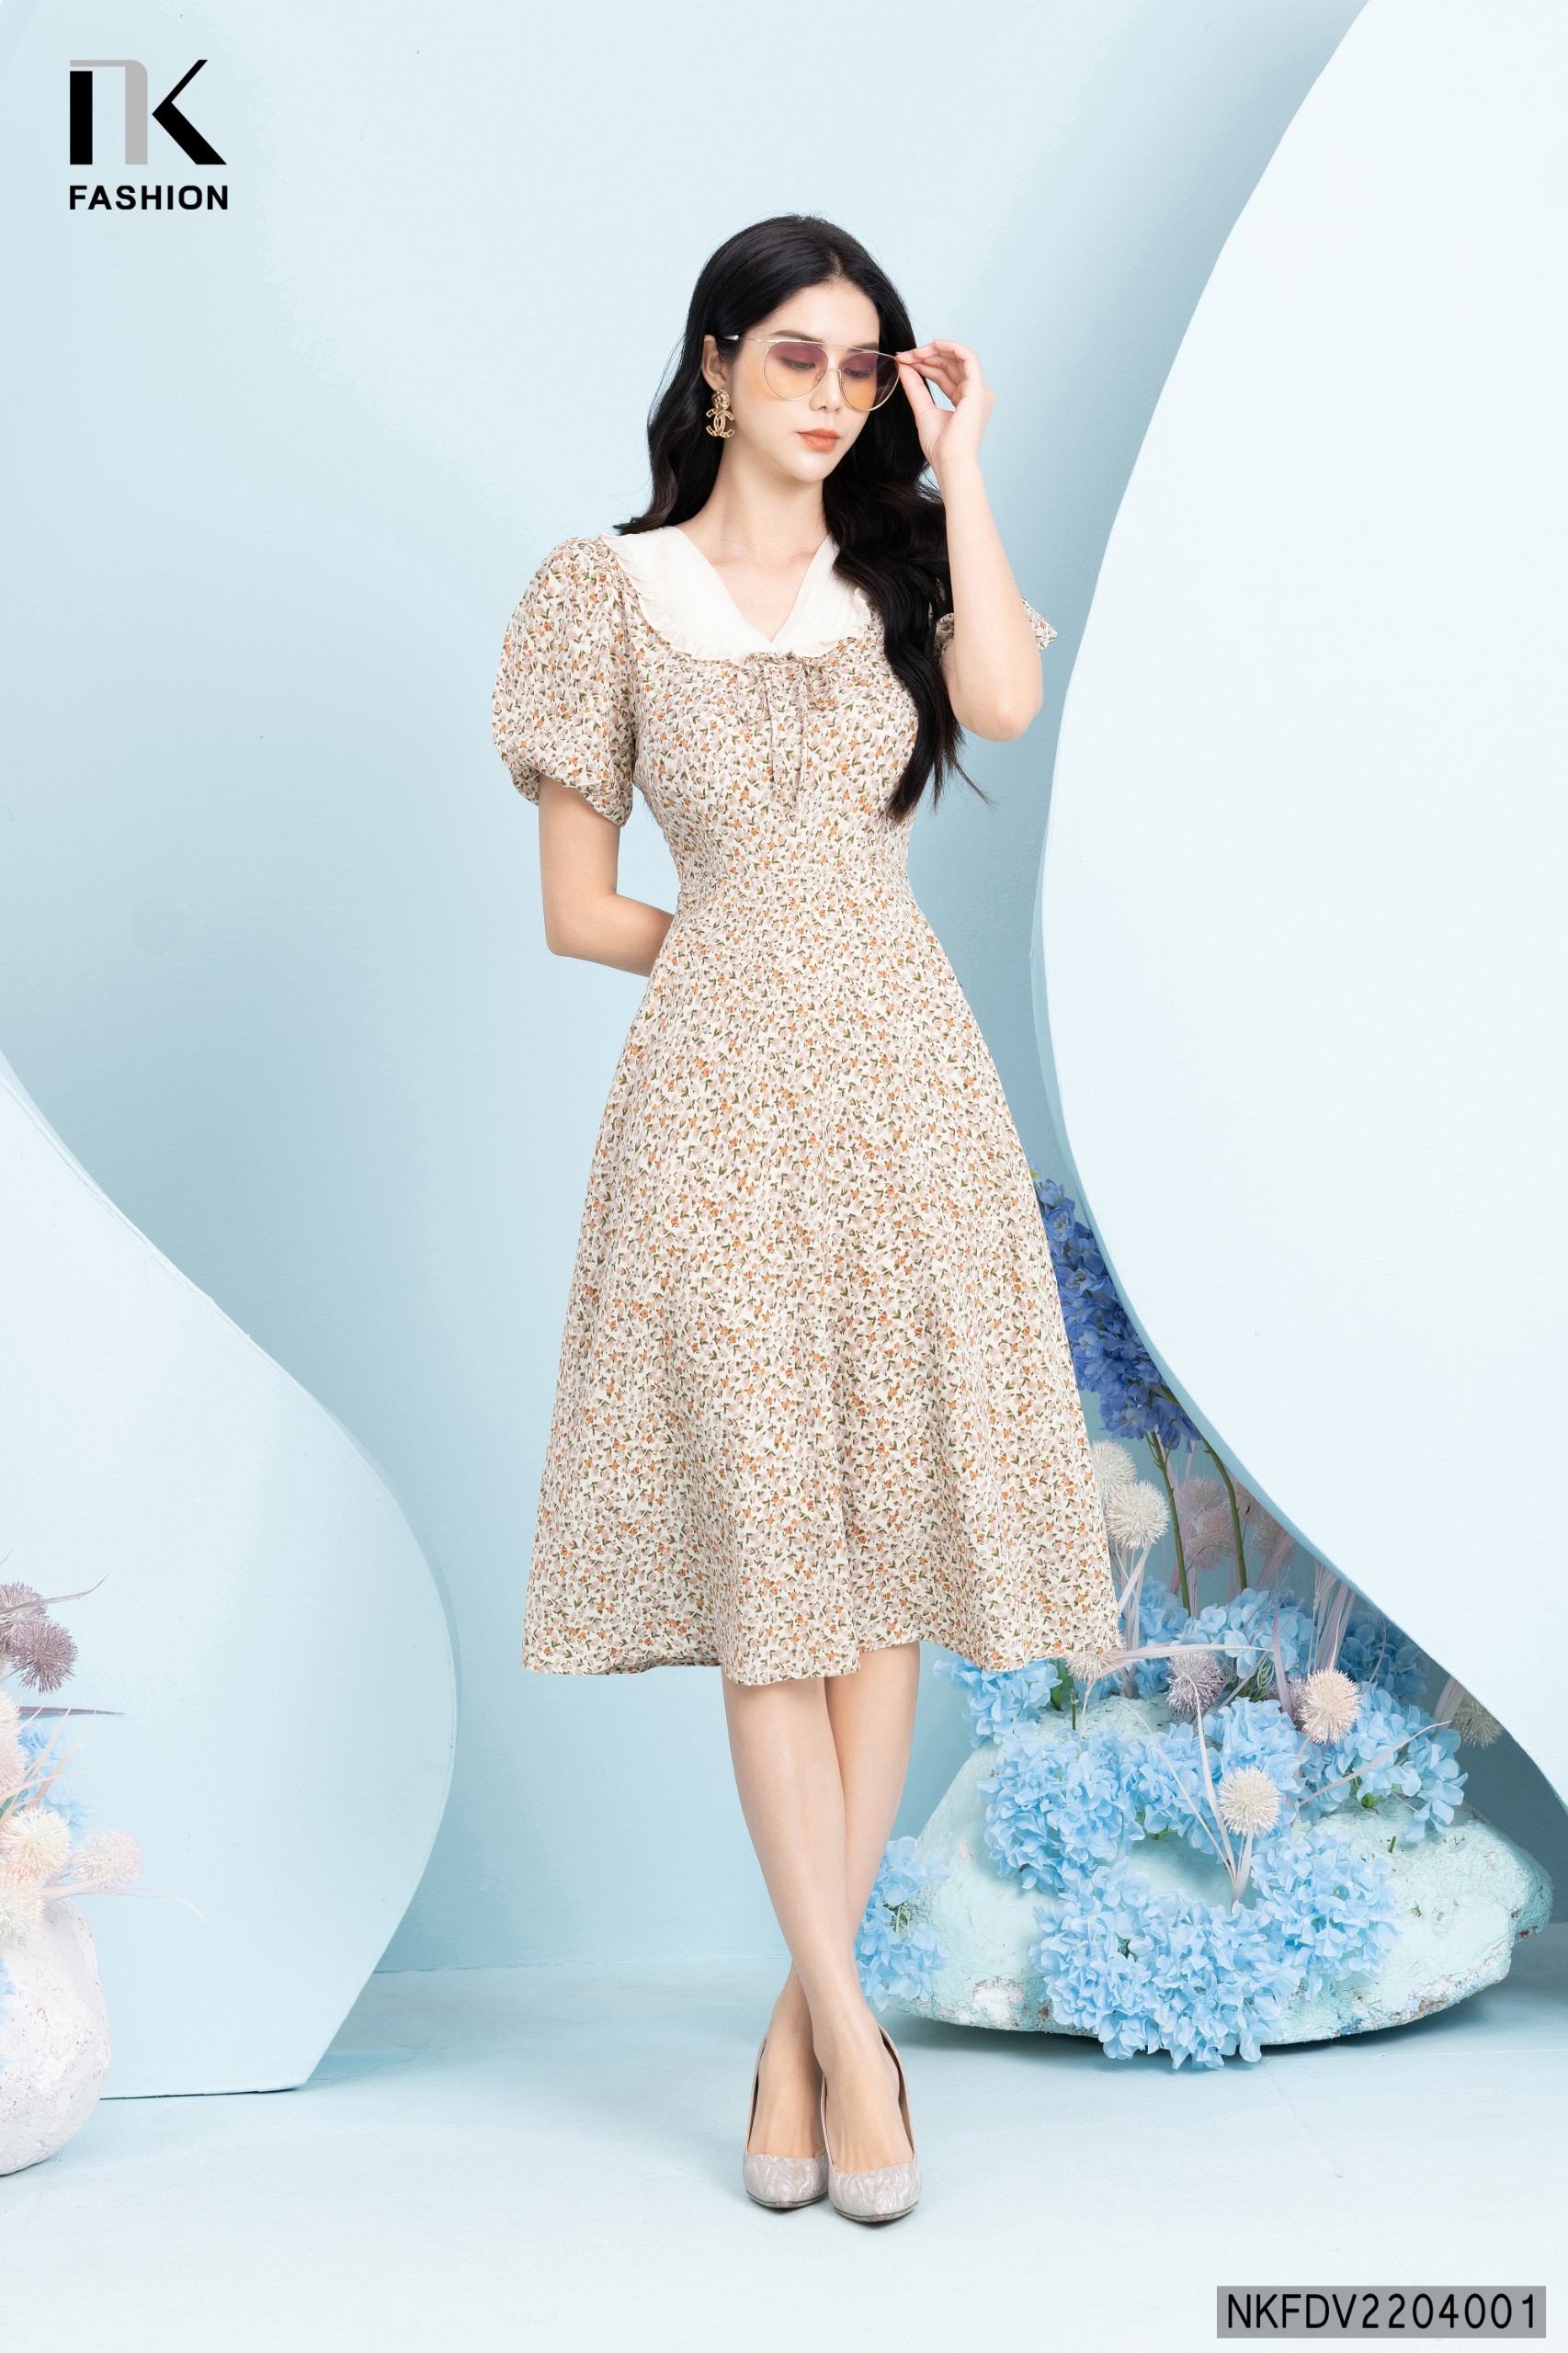 Sale Sốc Chỉ Size 2Xl Mã H0822 Giá 1340K: Váy Đầm Liền Thân Dáng Dài Shop Cổ  Tim Tay Bồng Đuôi Cá Dáng Ôm Pc Hàn Quốc Thời Trang Nữ Chất Liệu